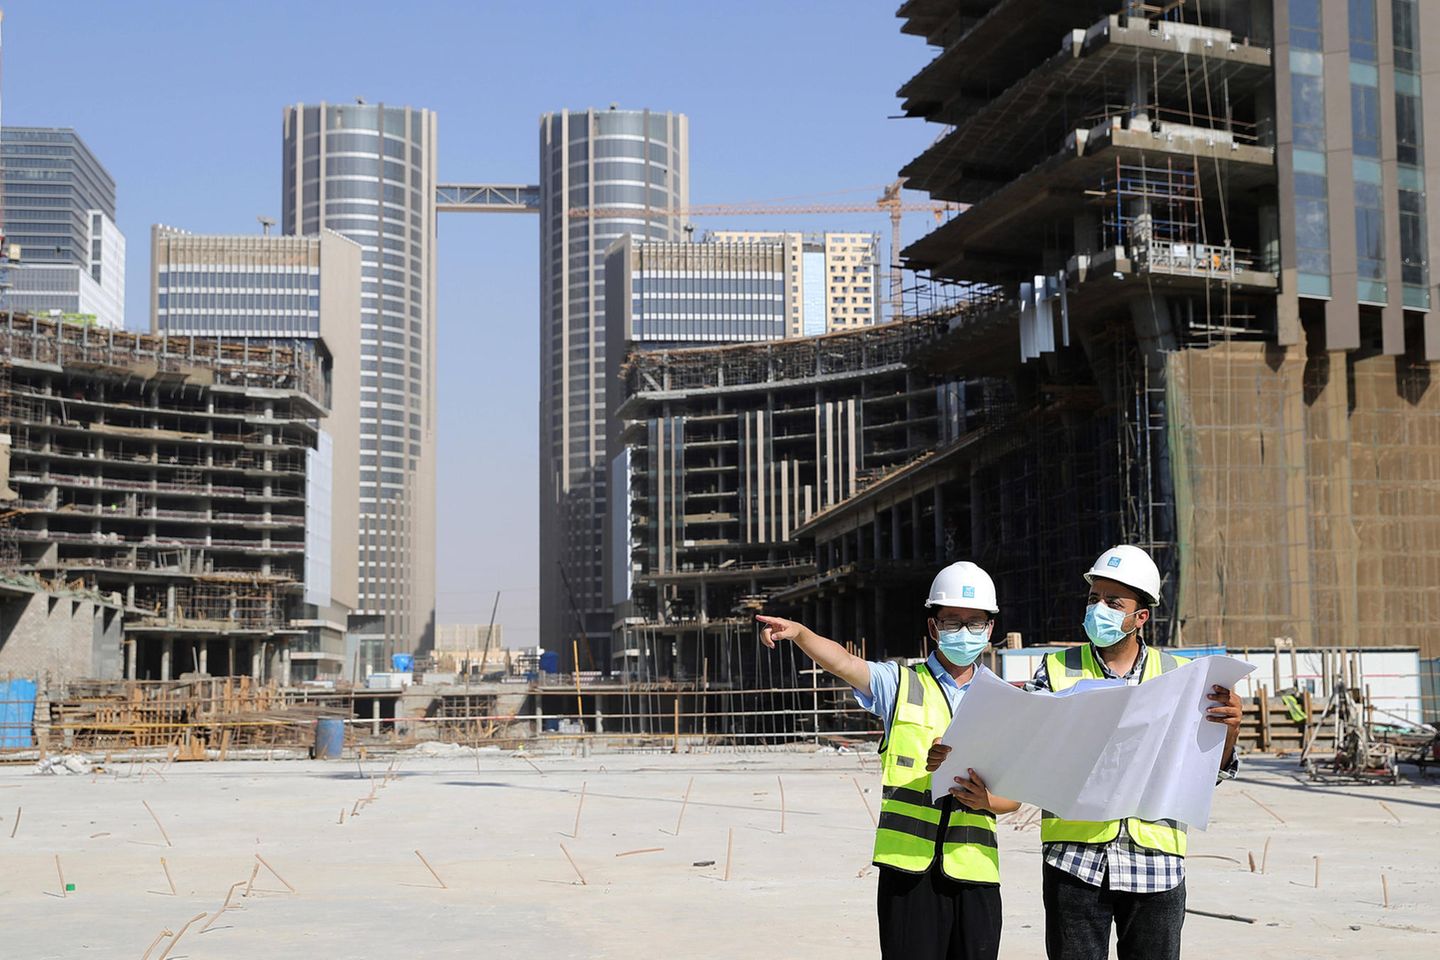 Chinesische Unternehmen drängen nach vorn: Der weltweit größte Baukonzern kommt schon aus der Volksrepublik